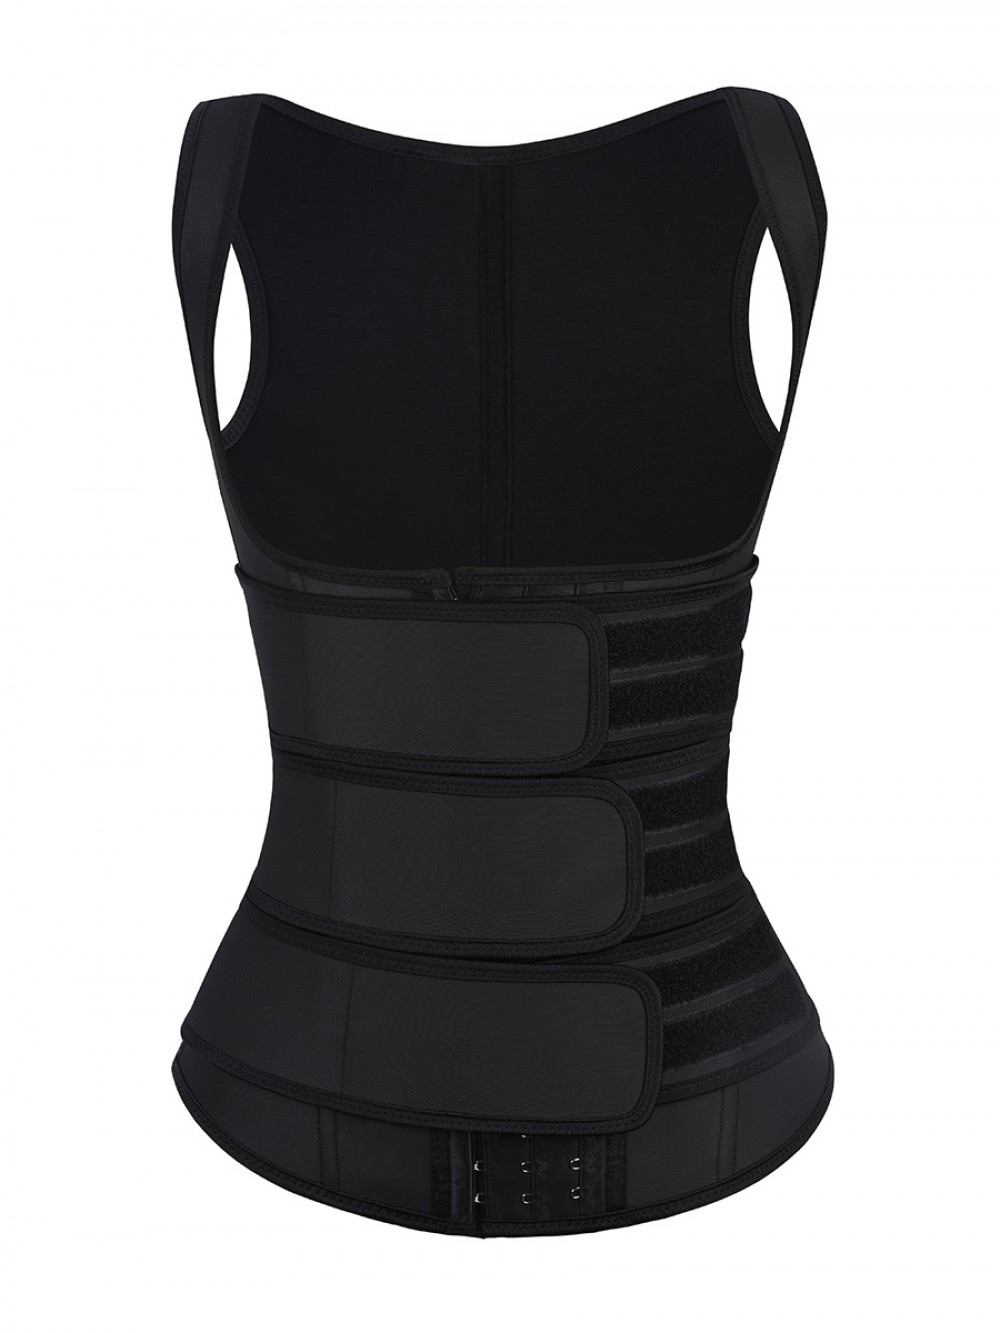 Black Latex Waist Trainer Vest Plus Size 9 Steel Bones Medium Control